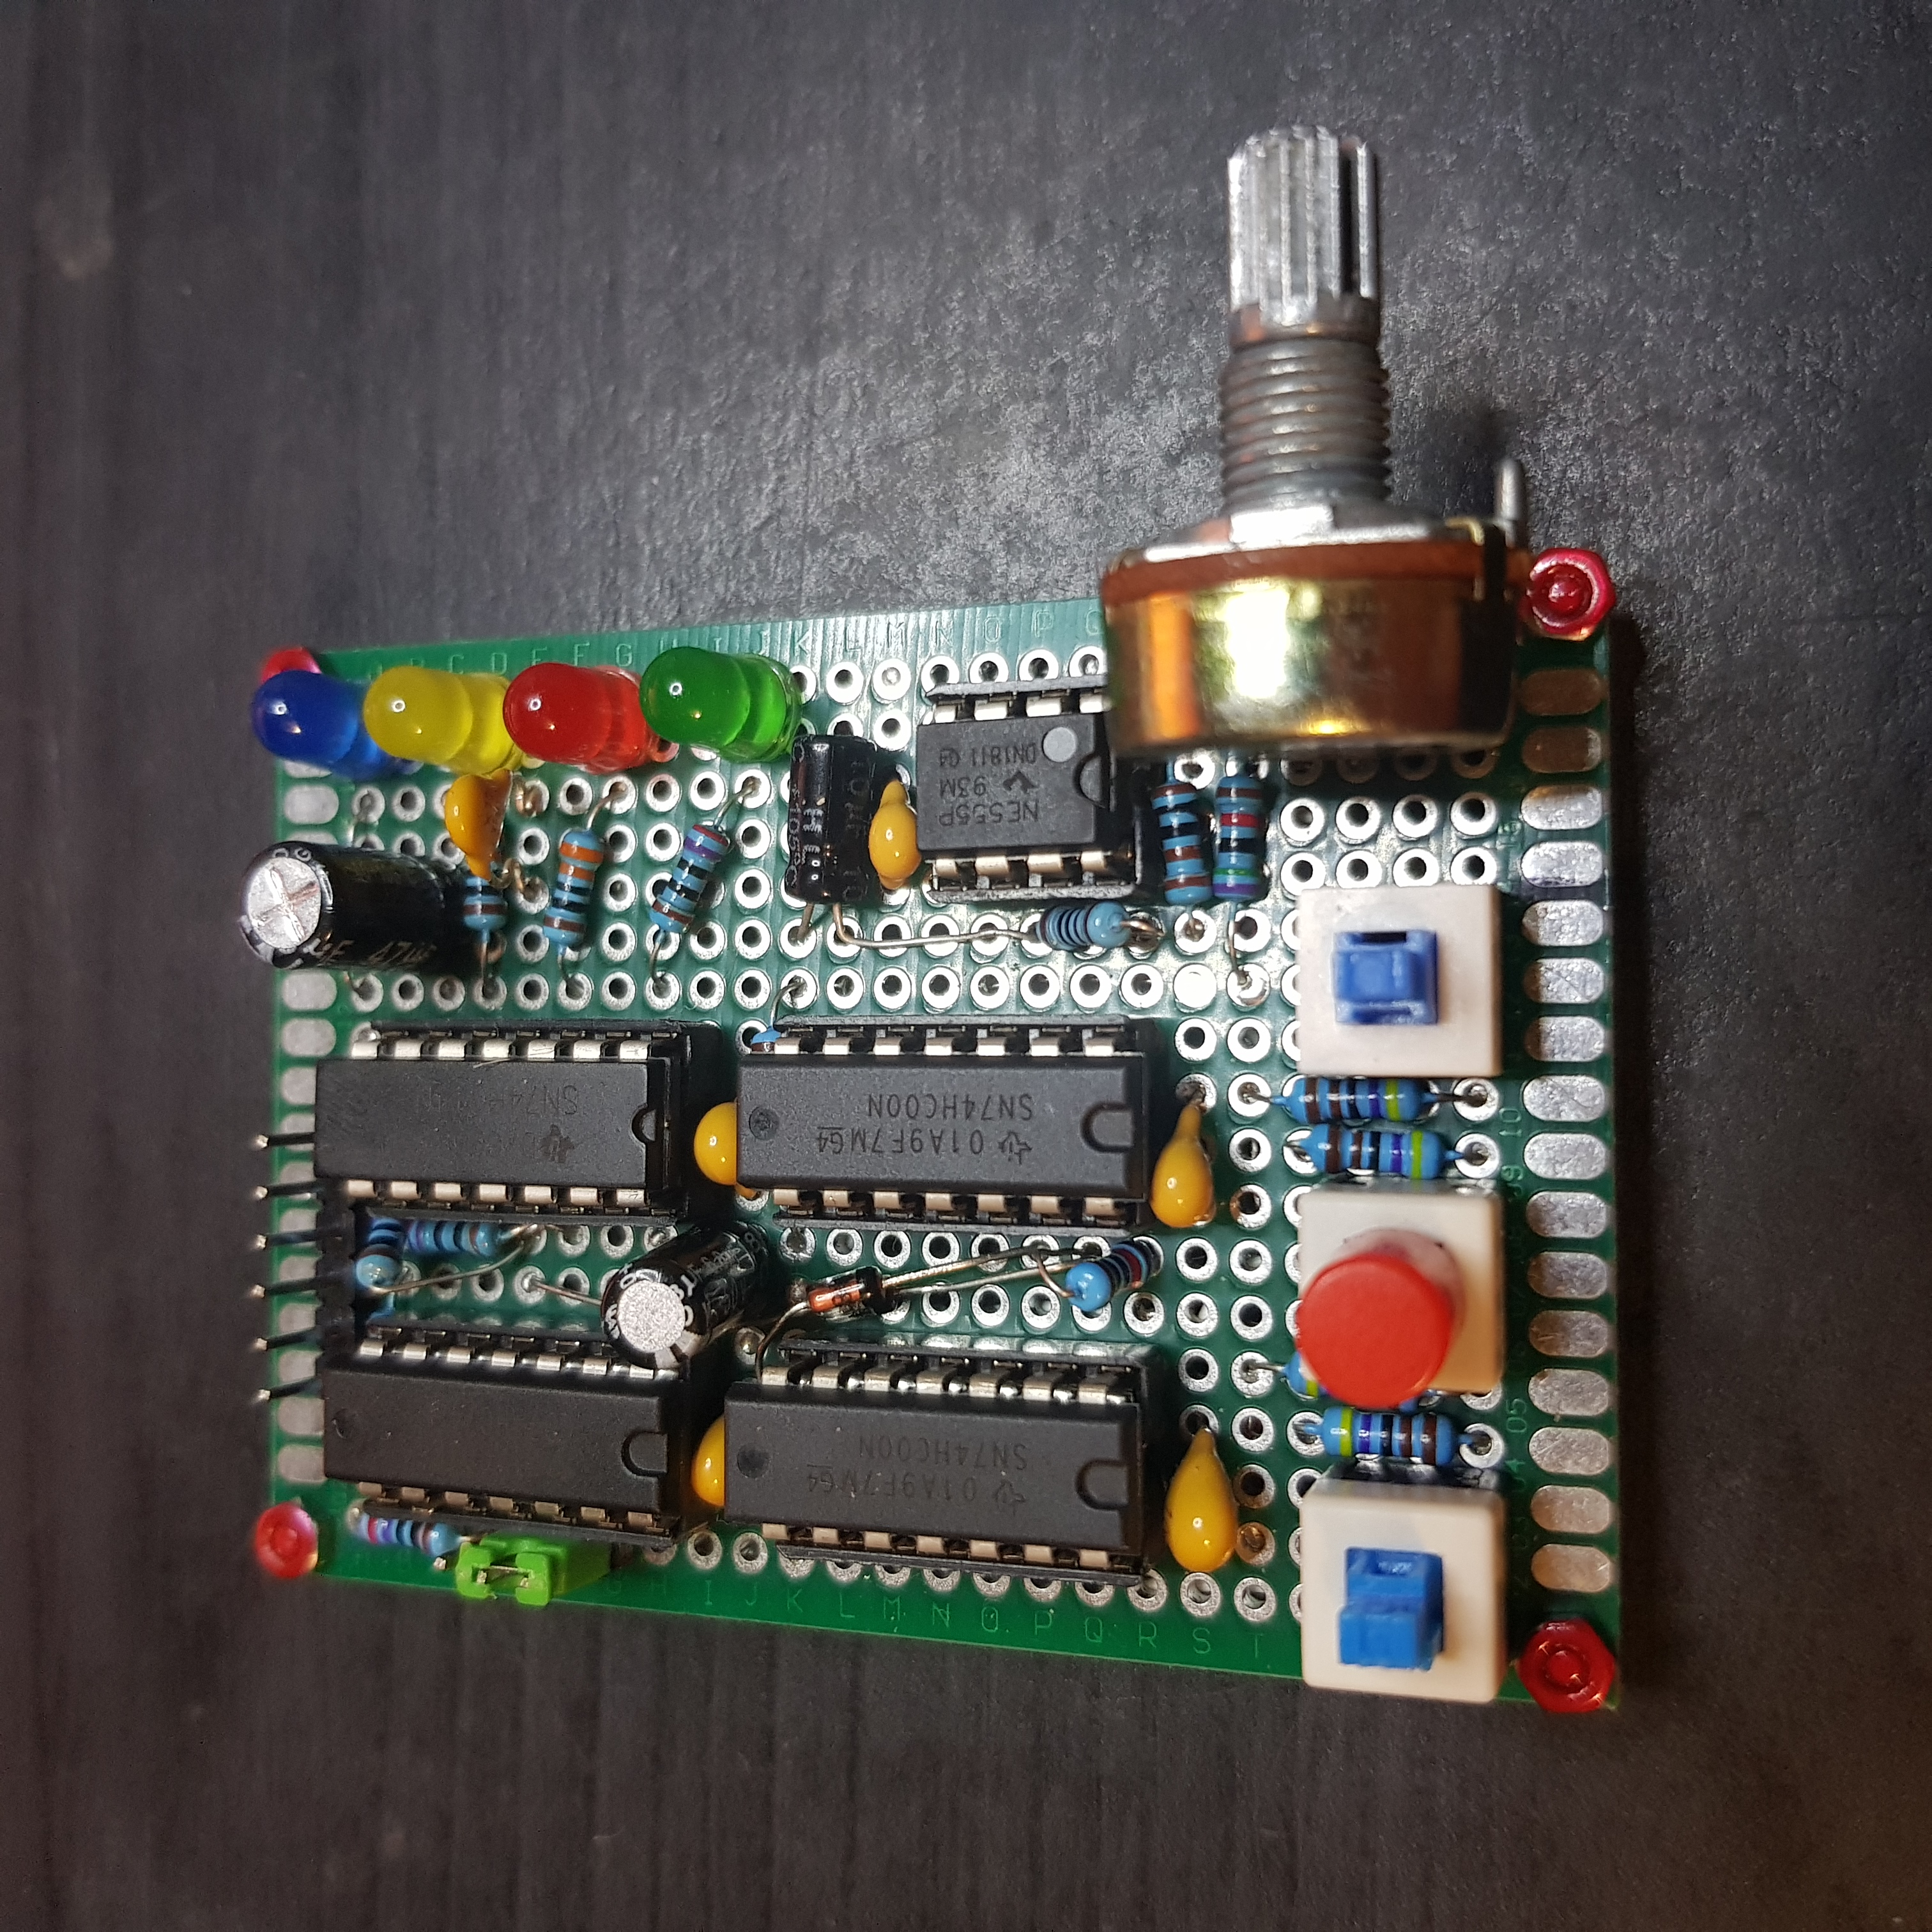 MP0003 Horloge à fréquence variable avec mode pas-à-pas (photo du prototype)